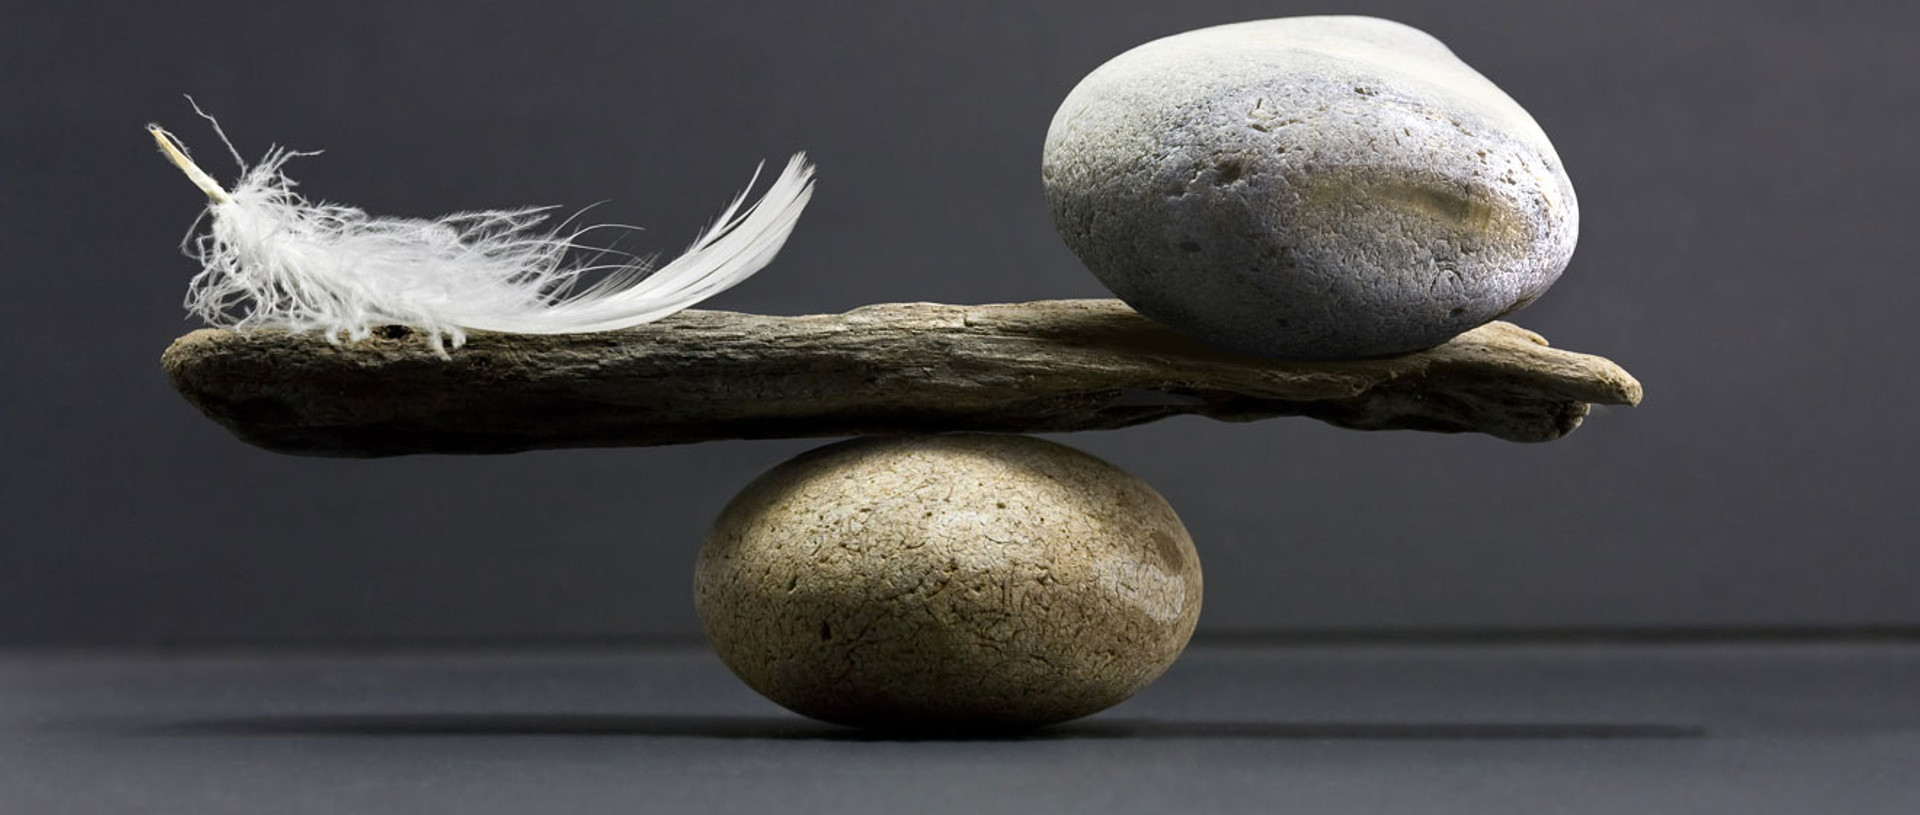 Як знайти і втримати баланс між роботою та життям: 7 порад підприємиці